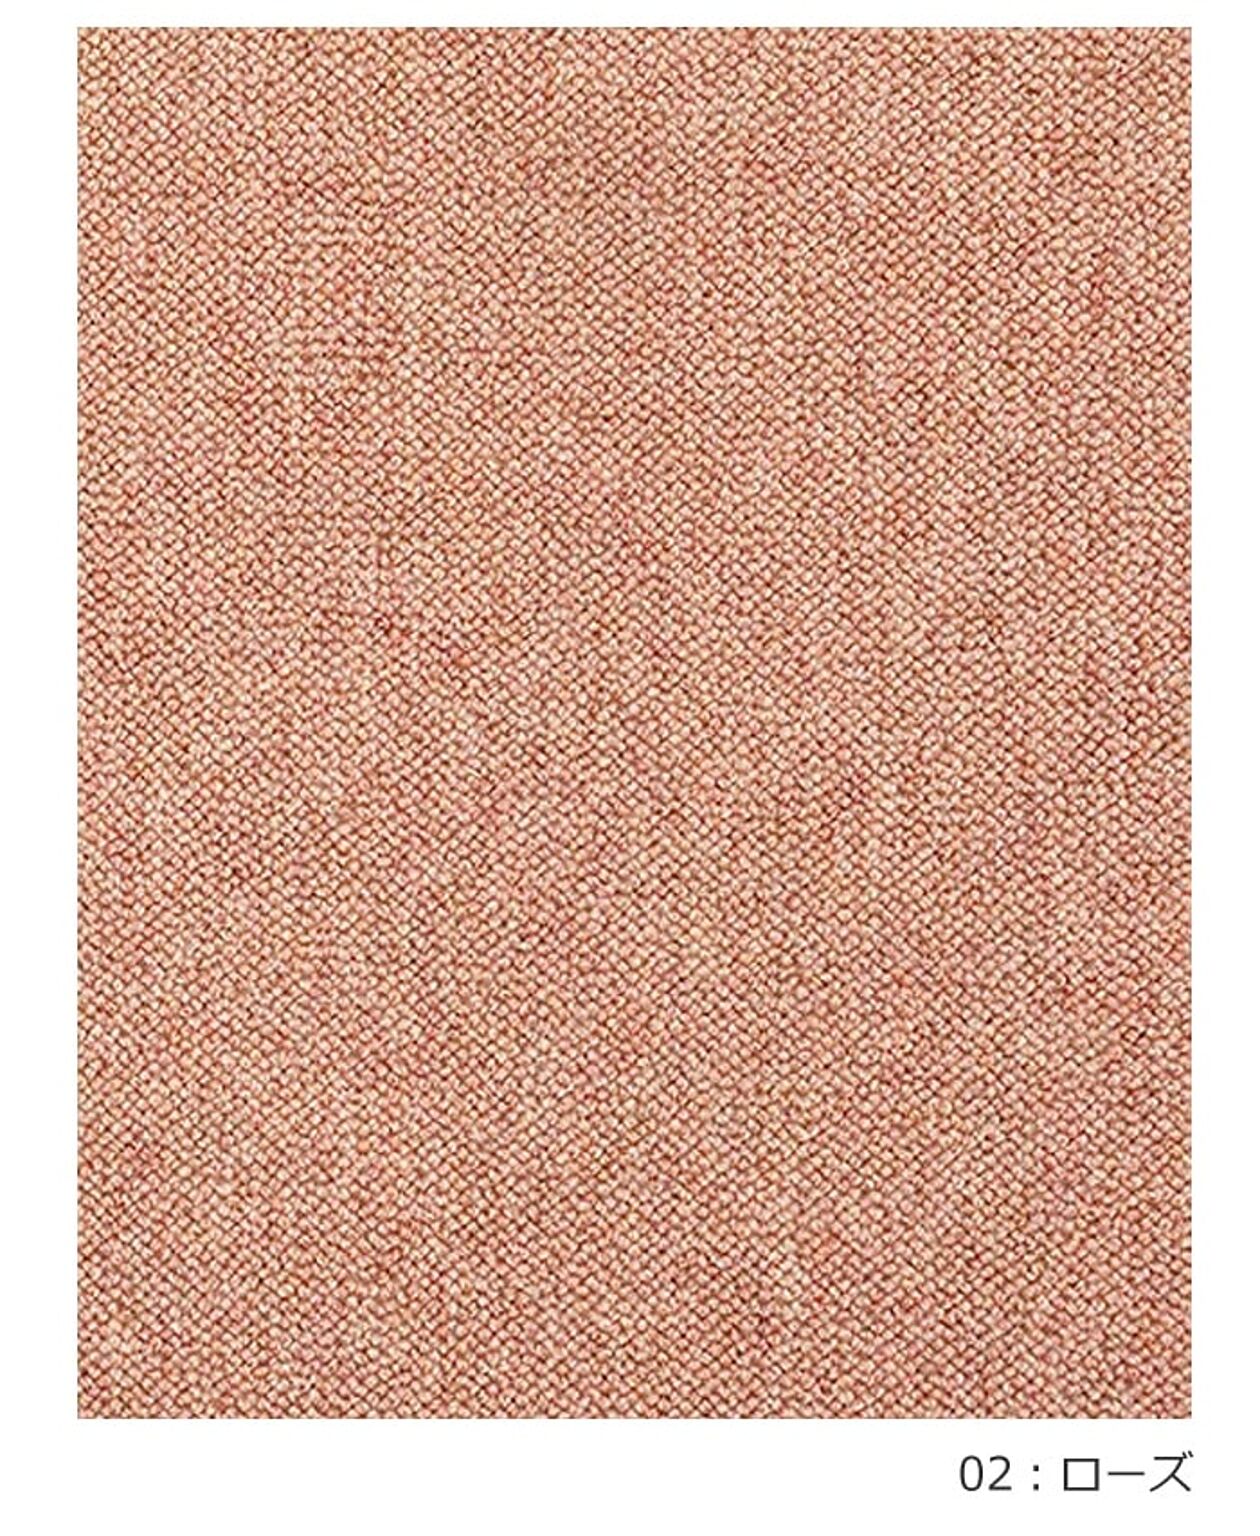 絨毯 日本製 防炎 防音 ウール100% カーペット prevell プレーベル リンクス 江戸間10畳 約352×440cm 無地 北欧 デザイン おしゃれな 引っ越し 新生活